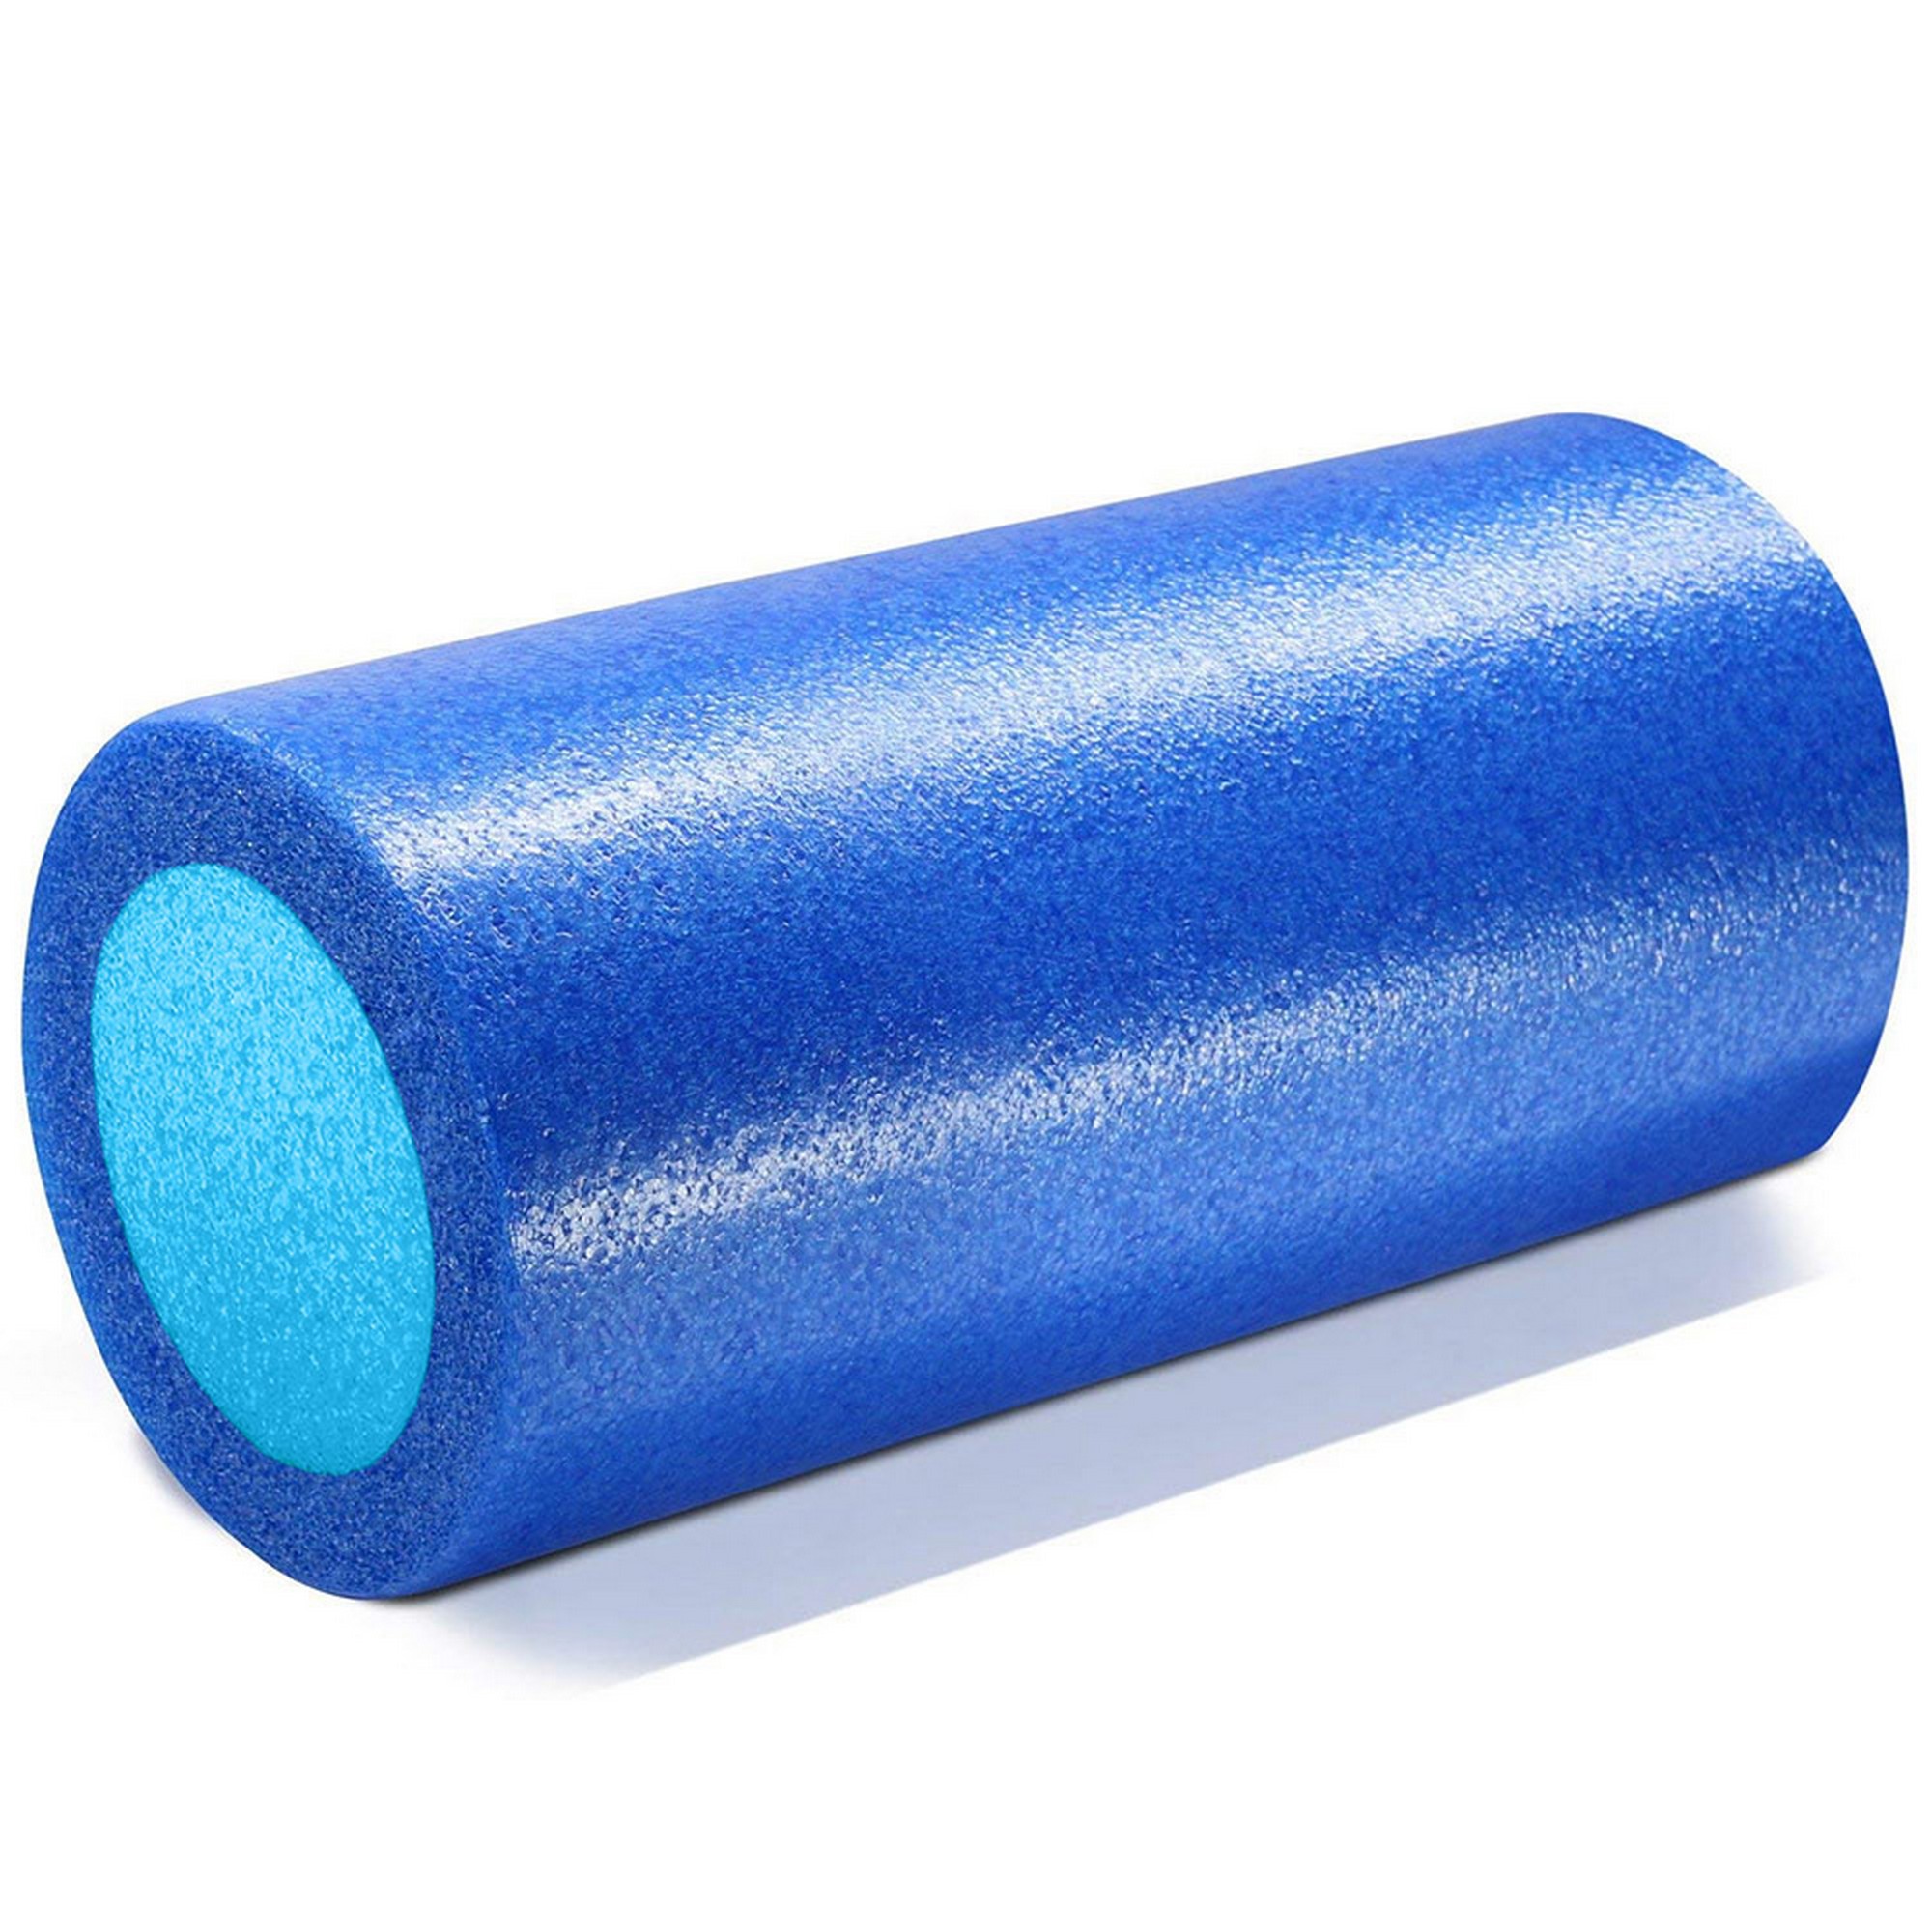 Ролик для йоги полнотелый 2-х цветный, 30х15см Sportex PEF30-A синий\голубой